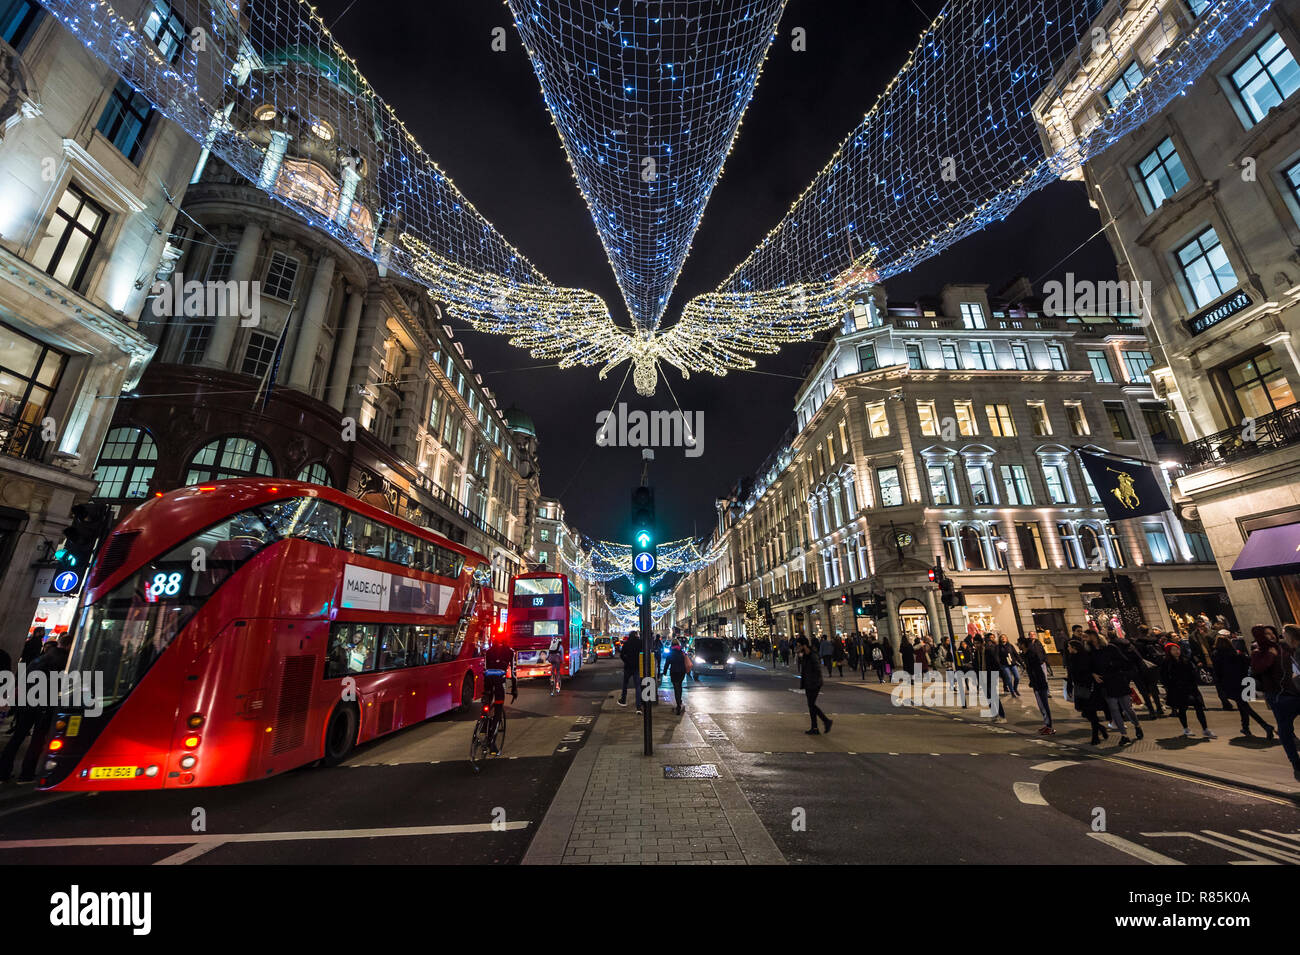 Londres - le 23 novembre 2018 : Le Black Friday shoppers foule les trottoirs du quartier de détail de luxe de la rue Regent, décoré de lumières de Noël. Banque D'Images